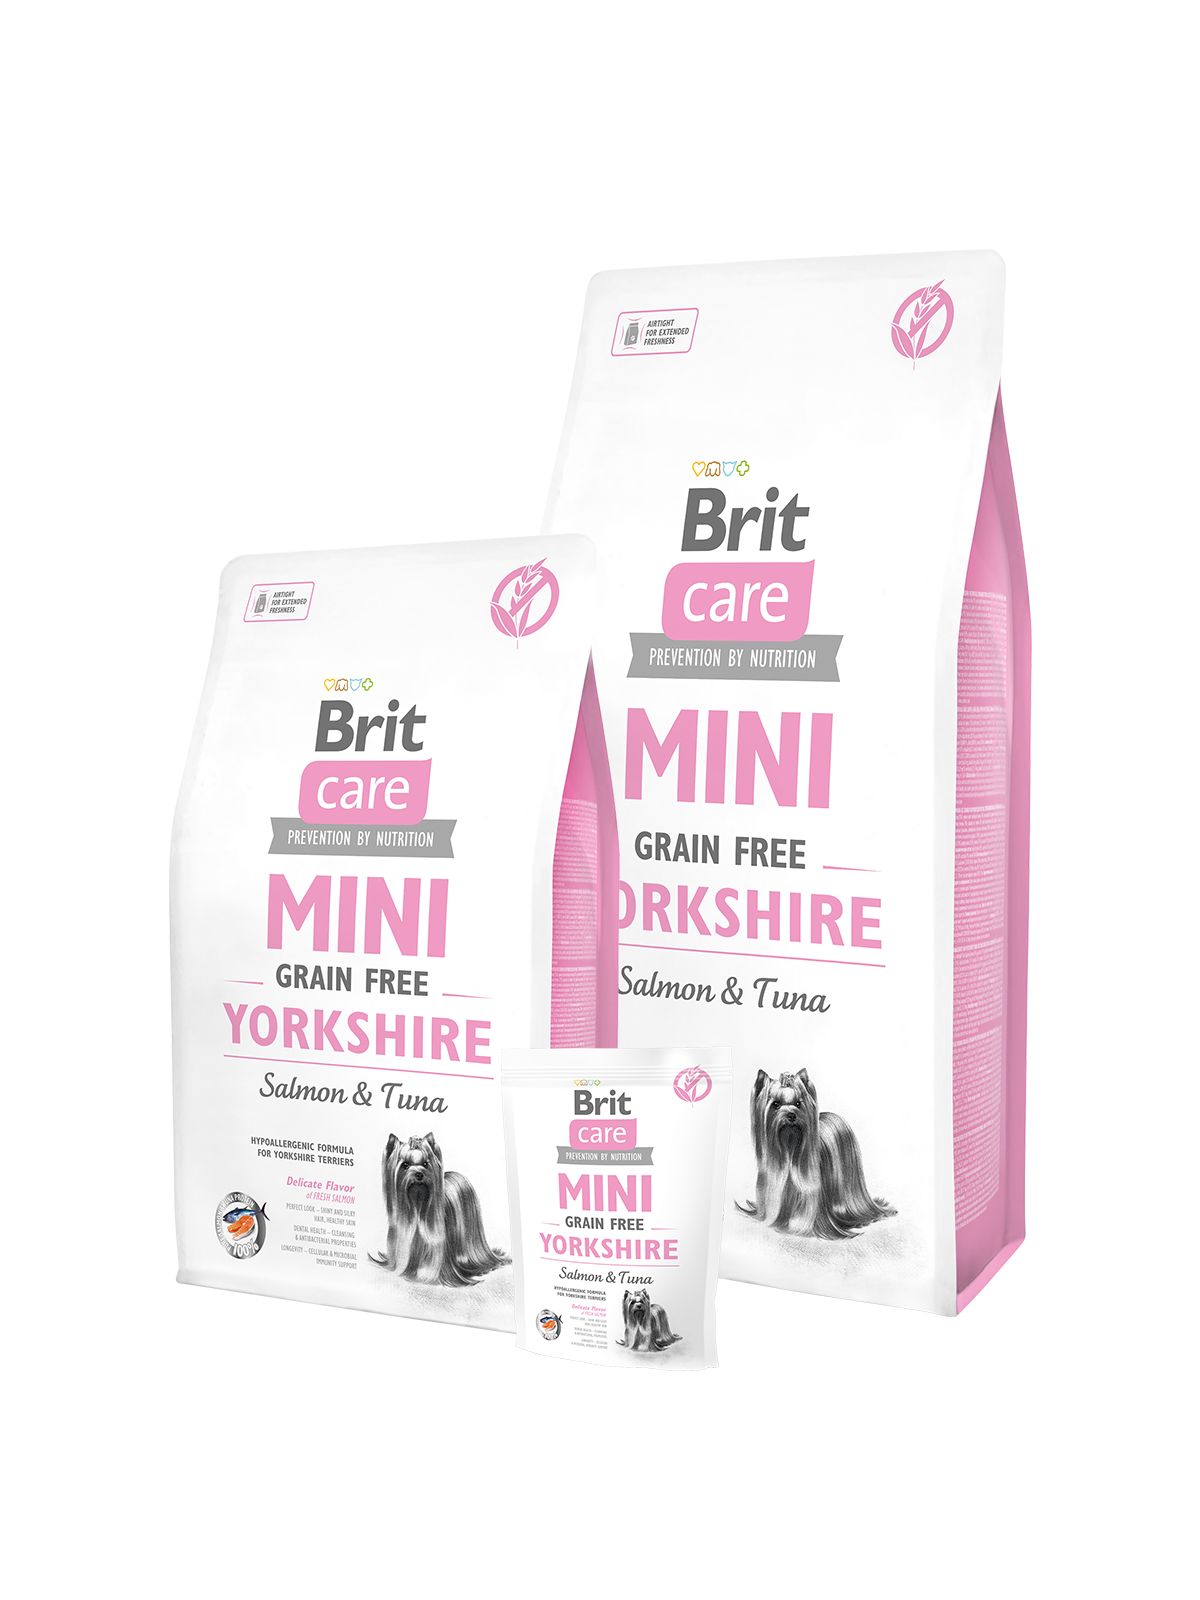 Brit Care Mini Grain Free Yorkshire, Lax & Tonfisk - spannmålsfritt för vuxna hundar av mkt små raser.